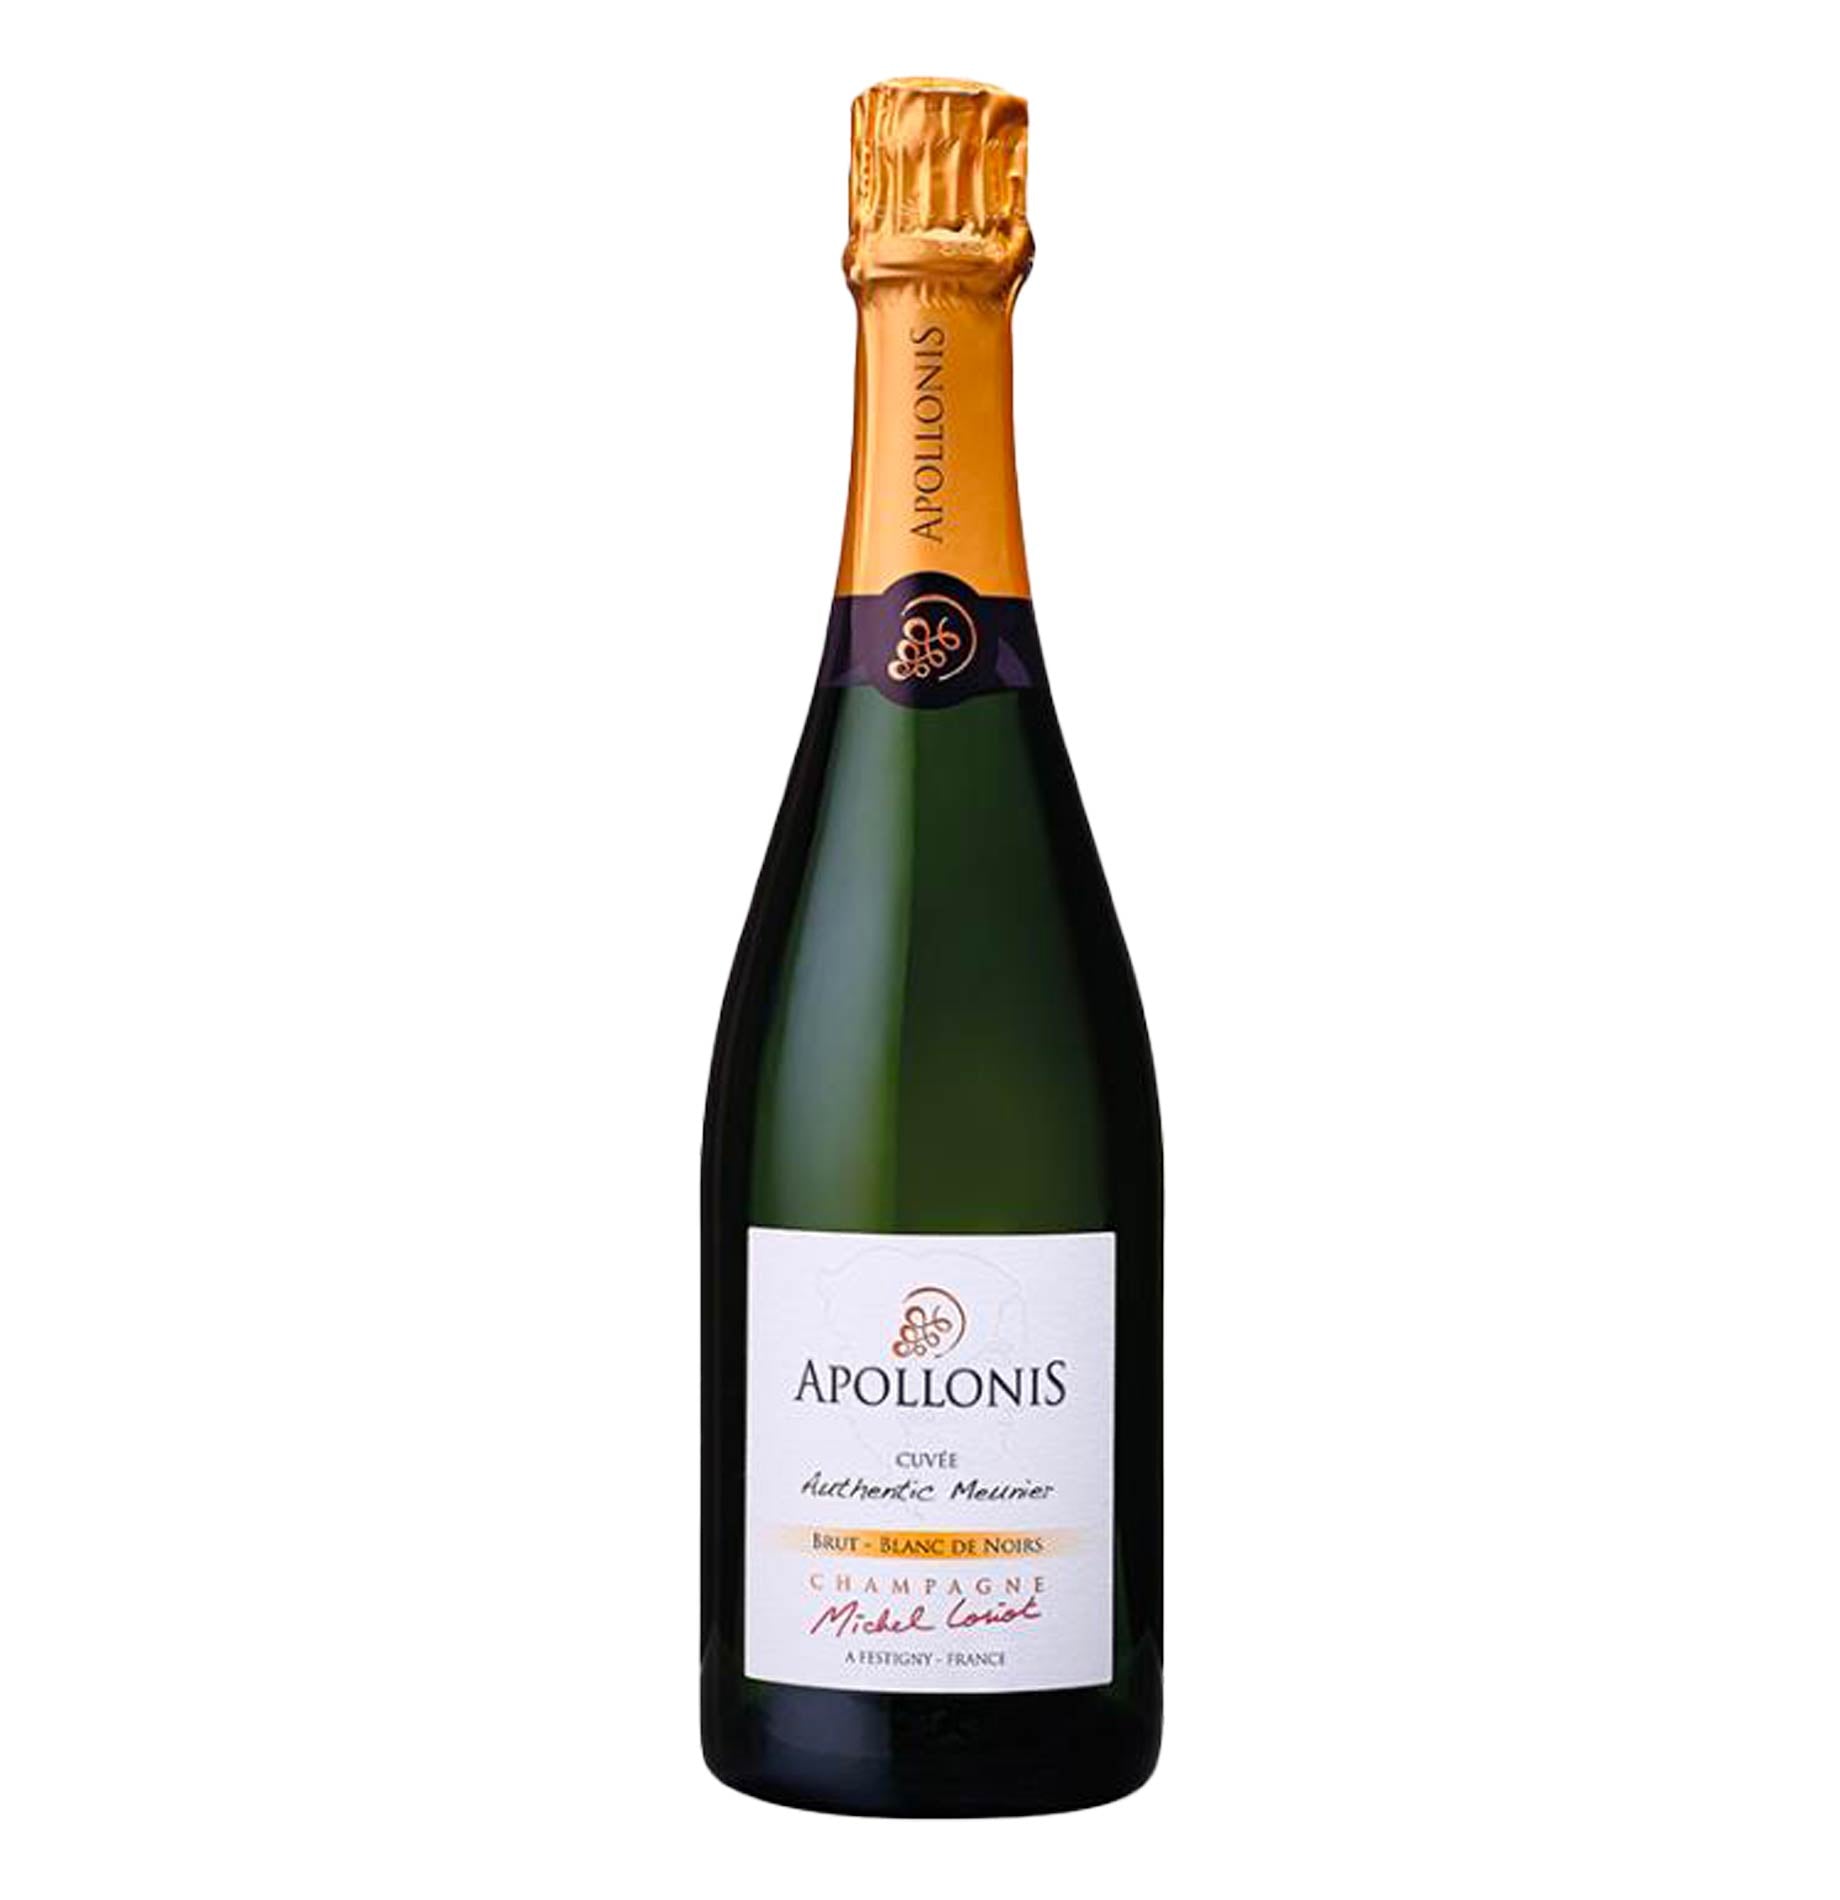 Champagne Blanc de Noirs Brut "Authentic Meunier" - Apollonis-Michel Loriot